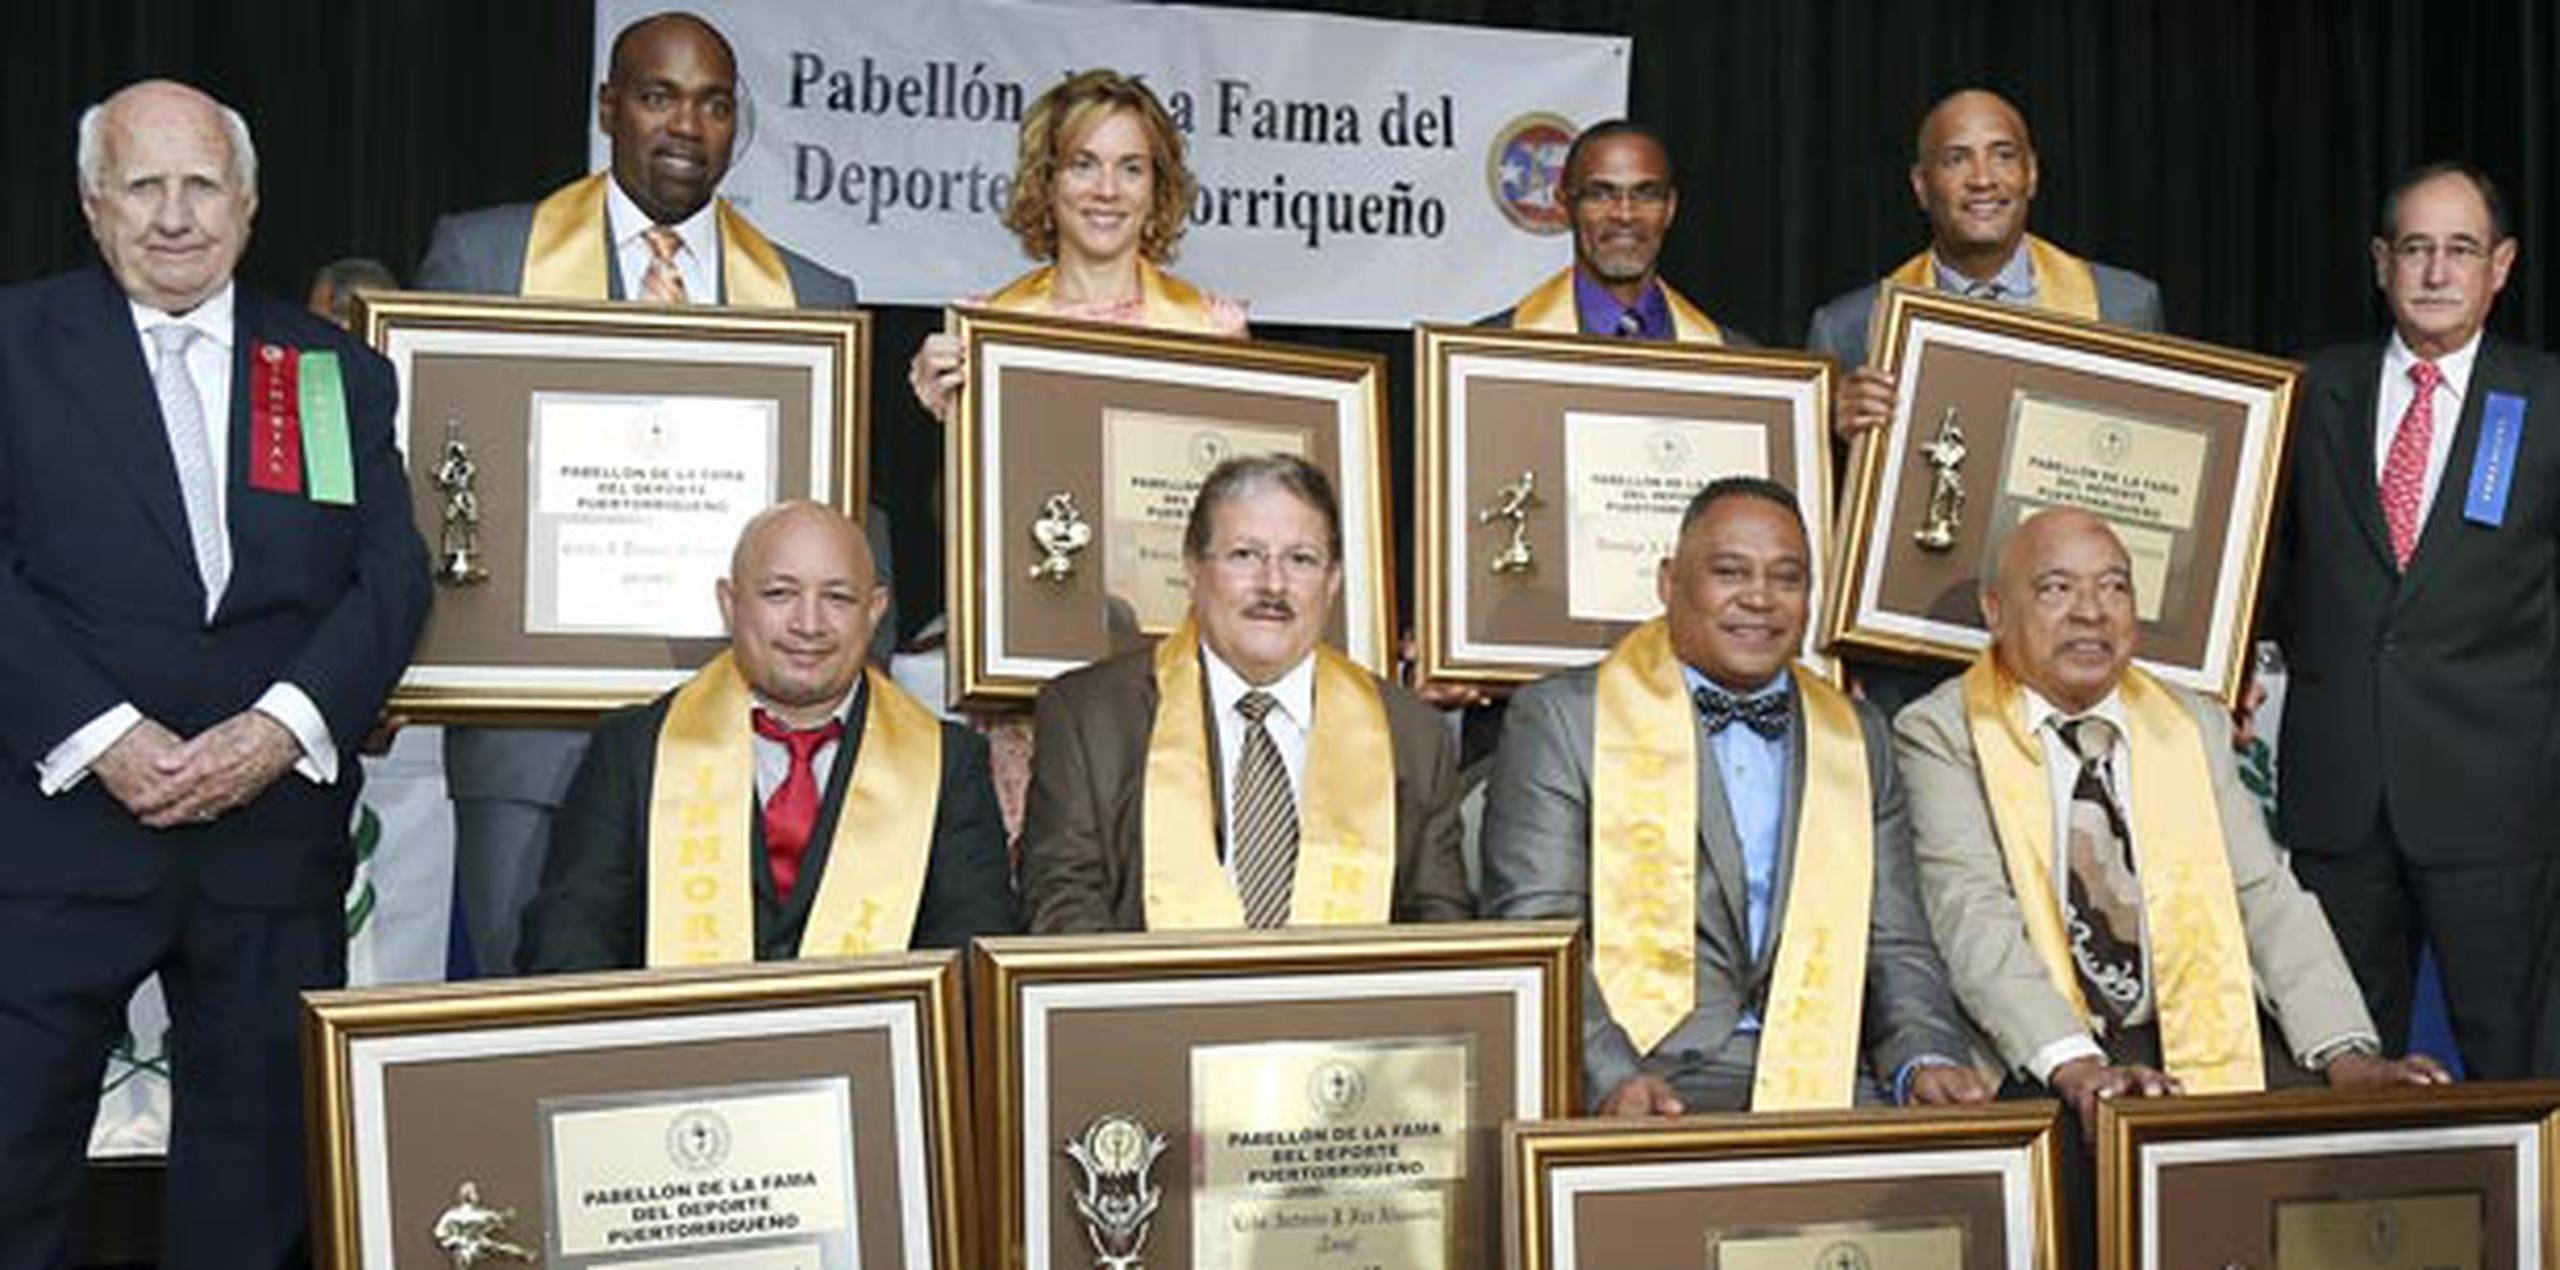 Carlos Delgado y Santos Alomar figuran entre los homenajeados. (jose.reyes@gfrmedia.com)